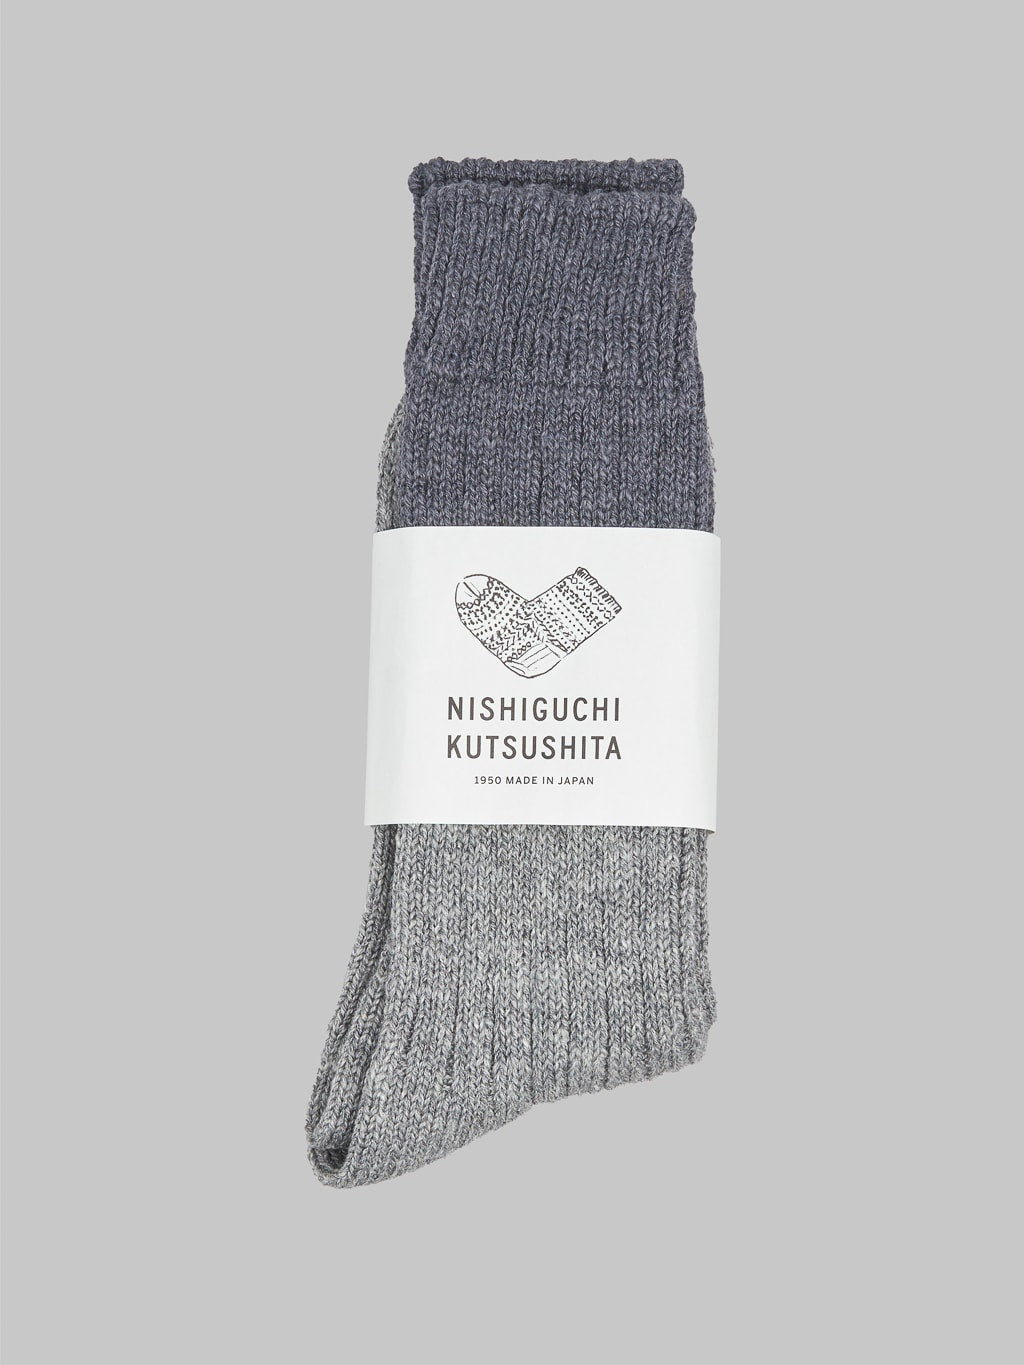 Nishiguchi Kutsushita Wool Cotton Socks Charcoal Japan Made